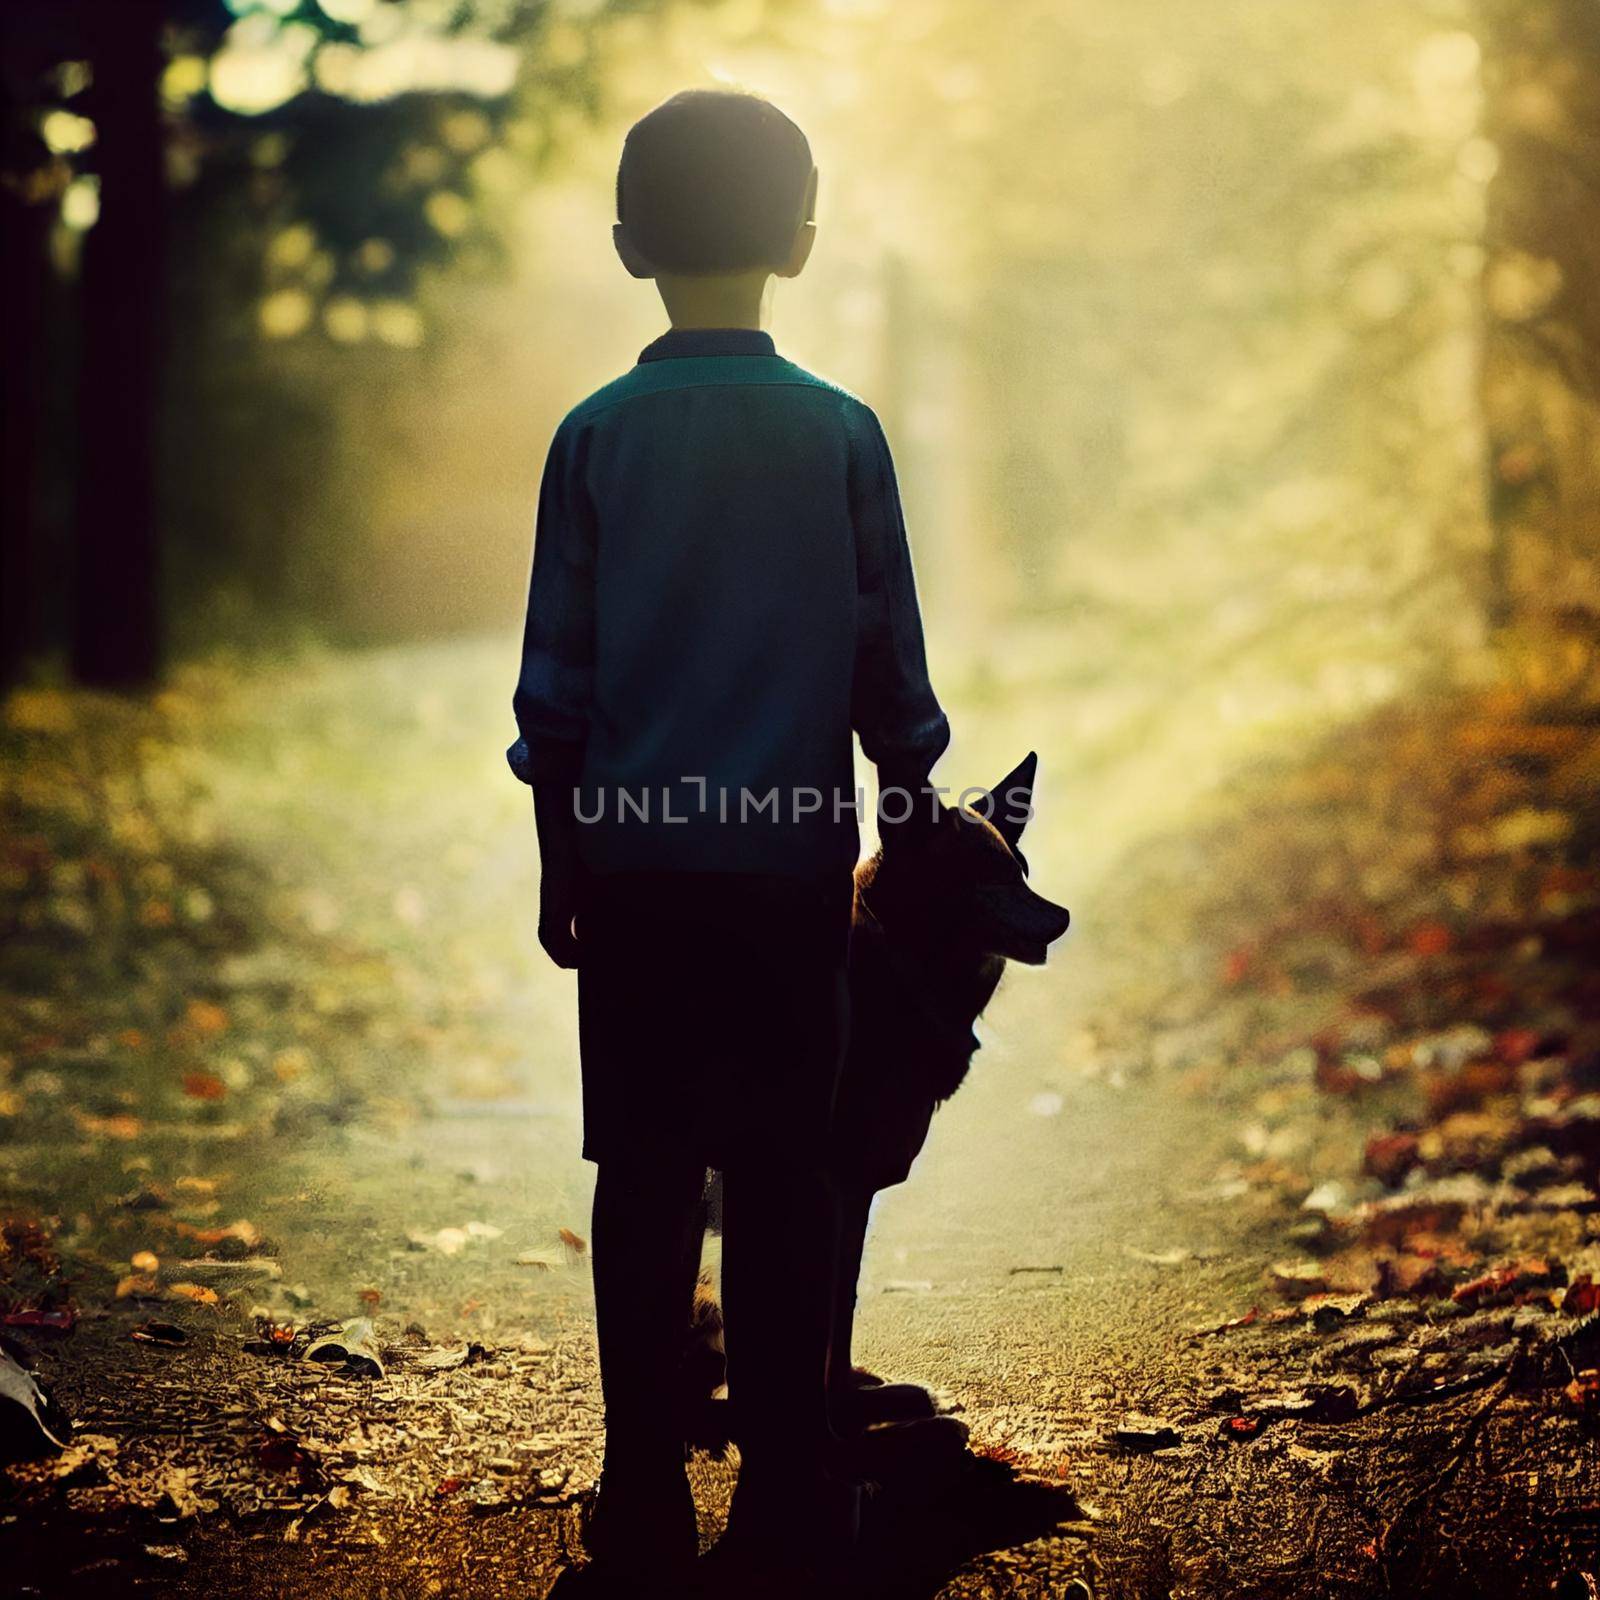 A boy with a dog on a walk. High quality illustration